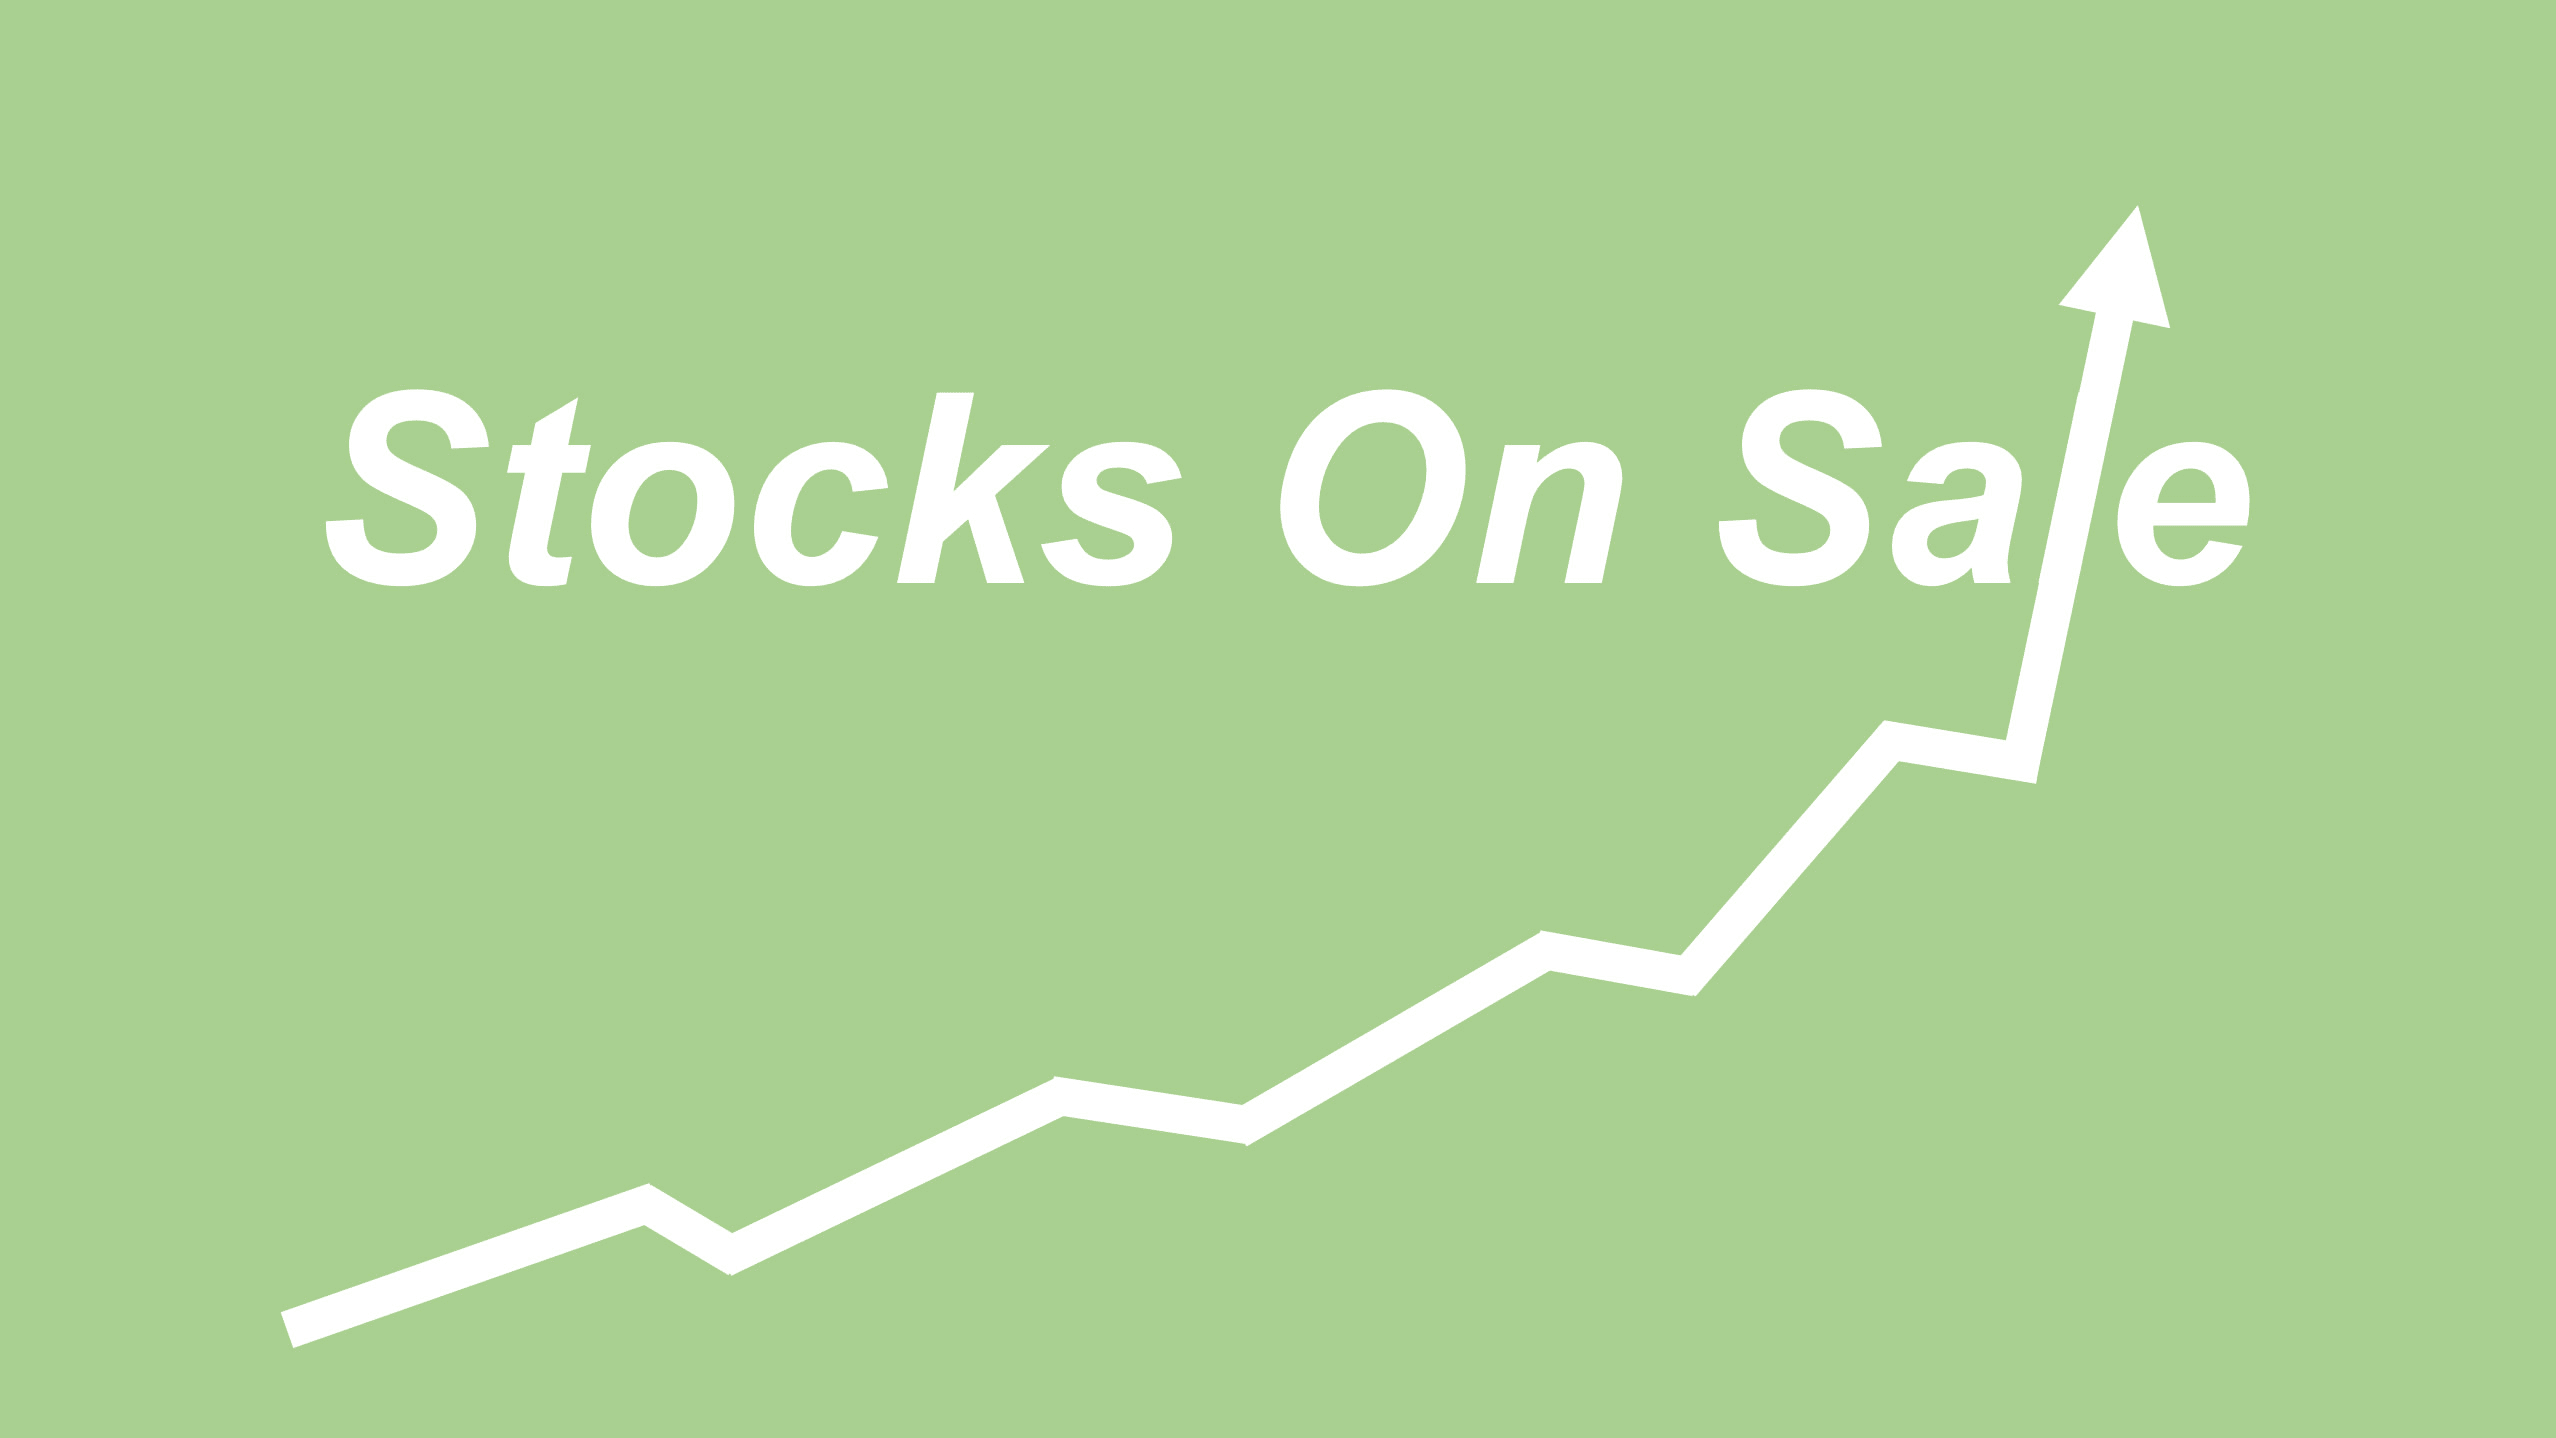 Stocks on Sale